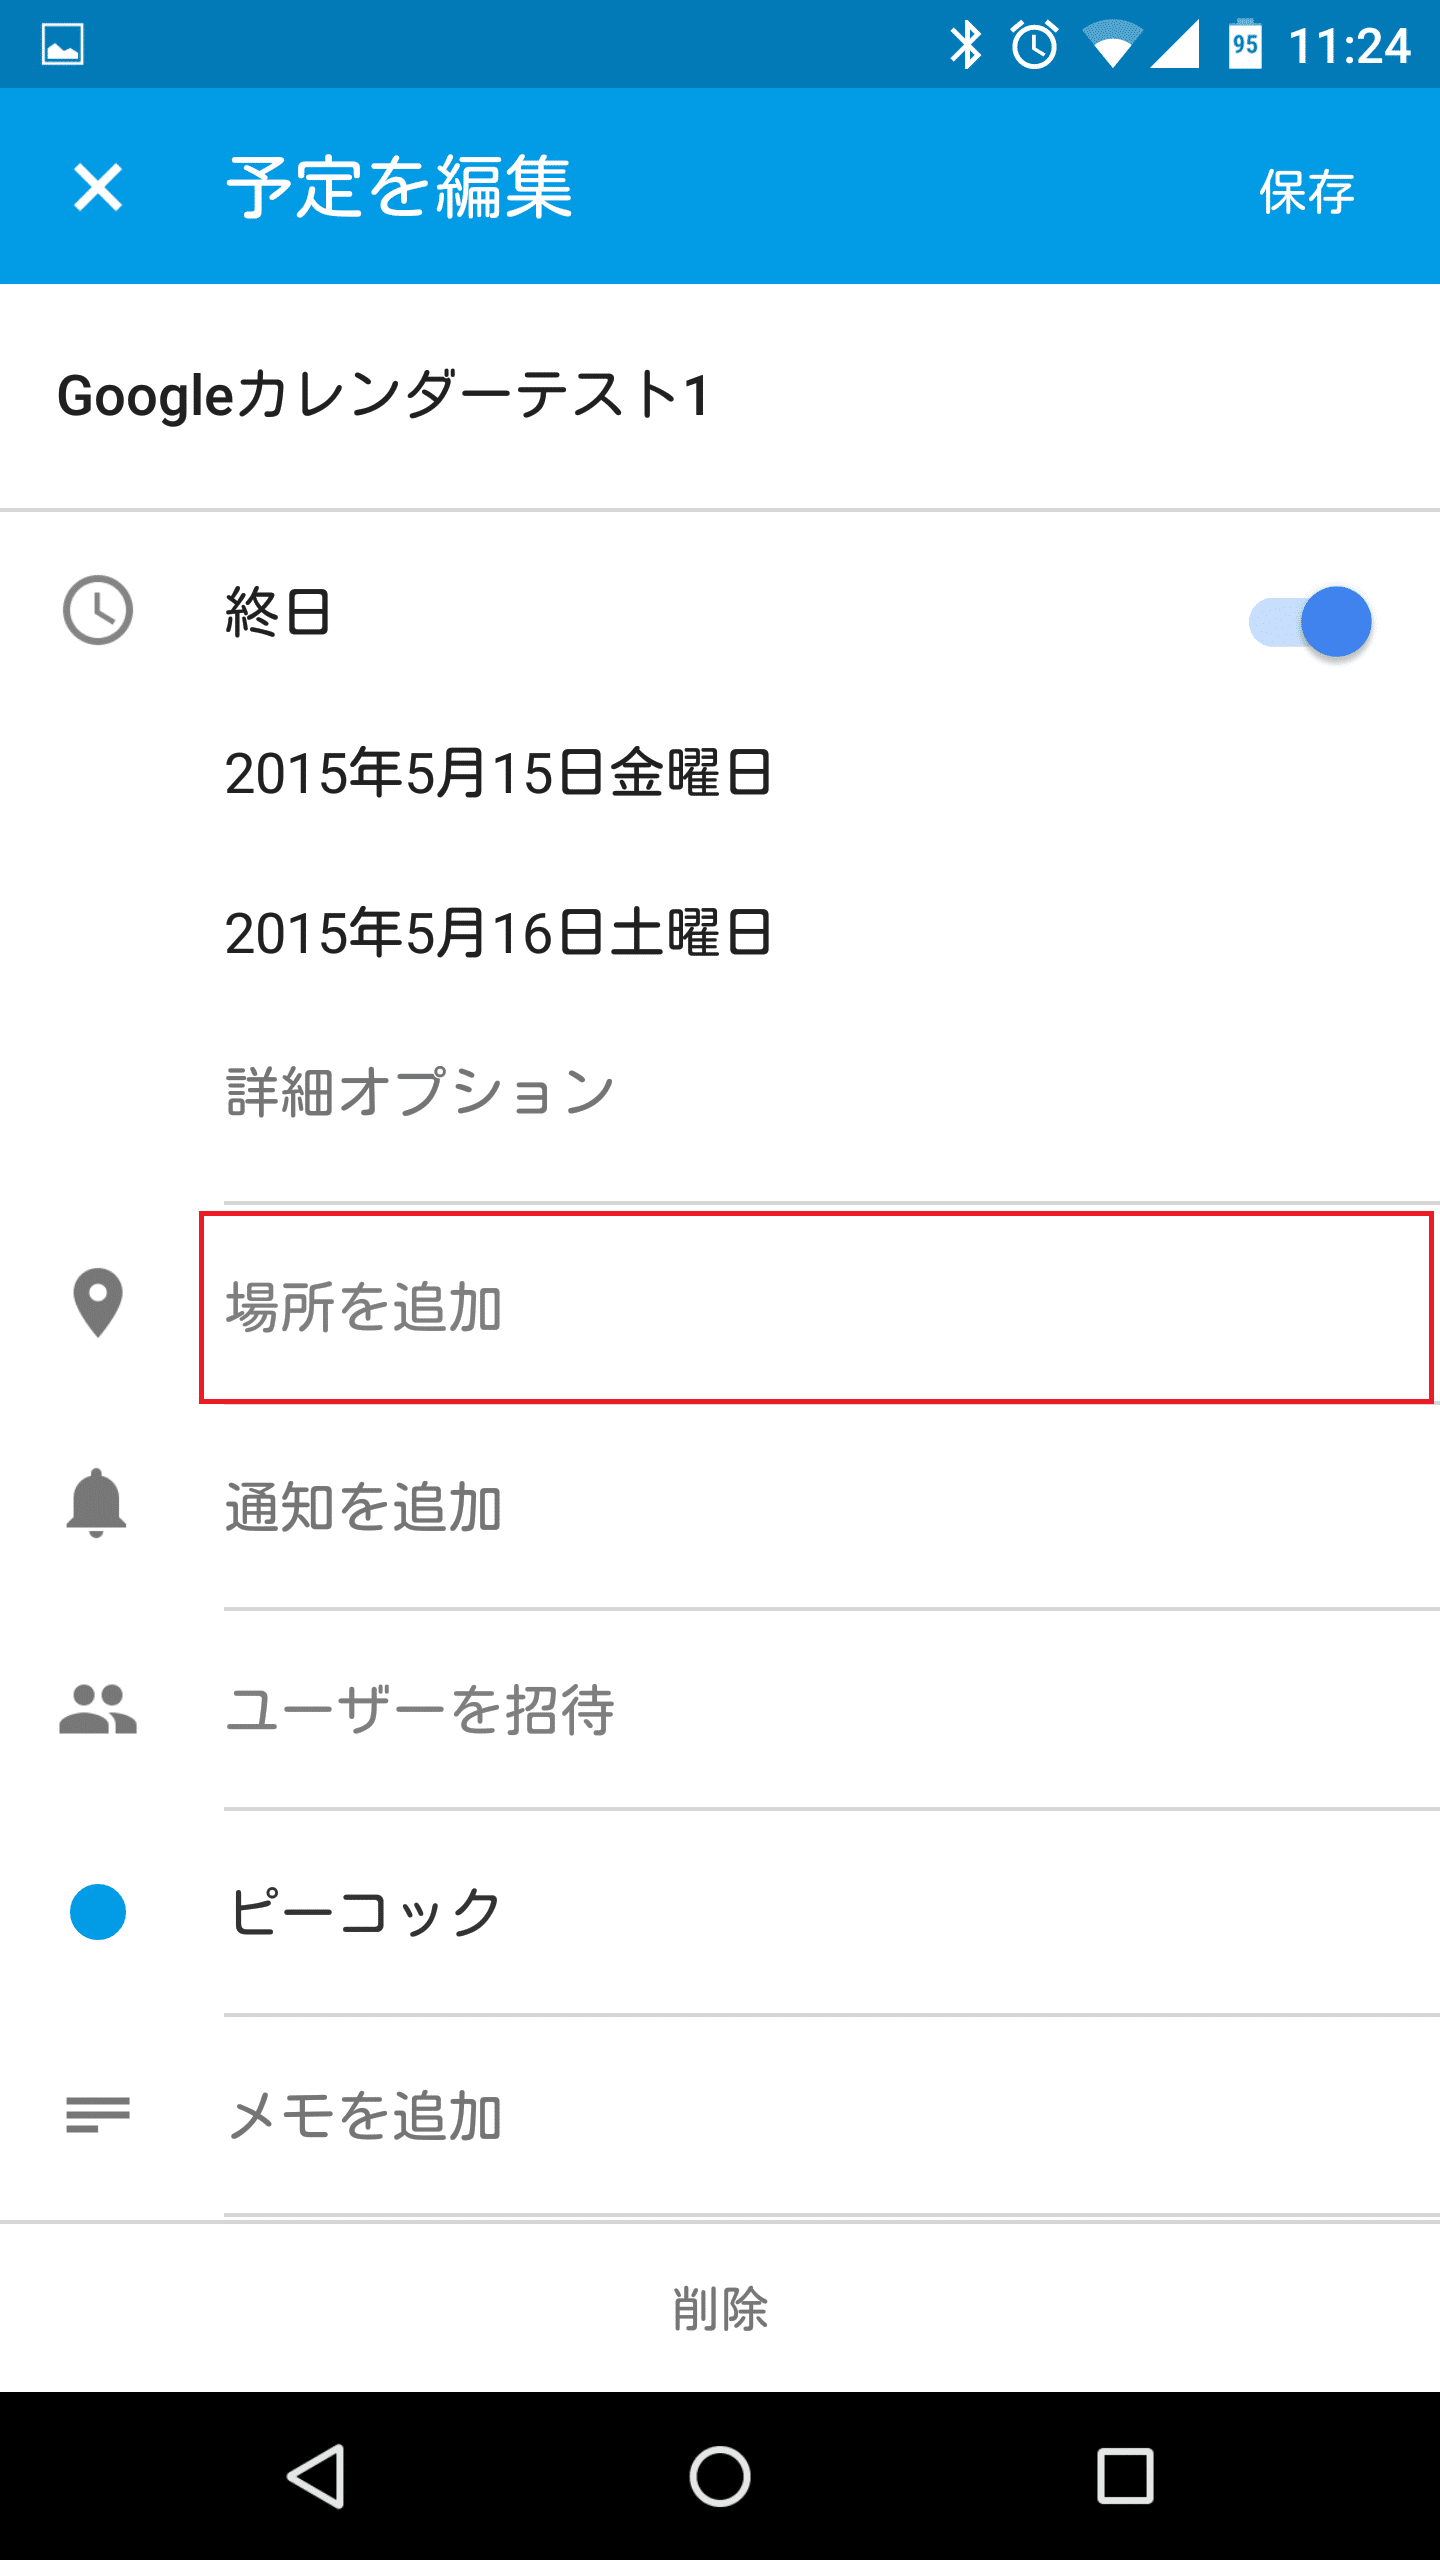 Googleカレンダー Android版で場所を登録して地図を表示し Googleマップと連携して目的地までナビをする方法 アンドロイドラバー